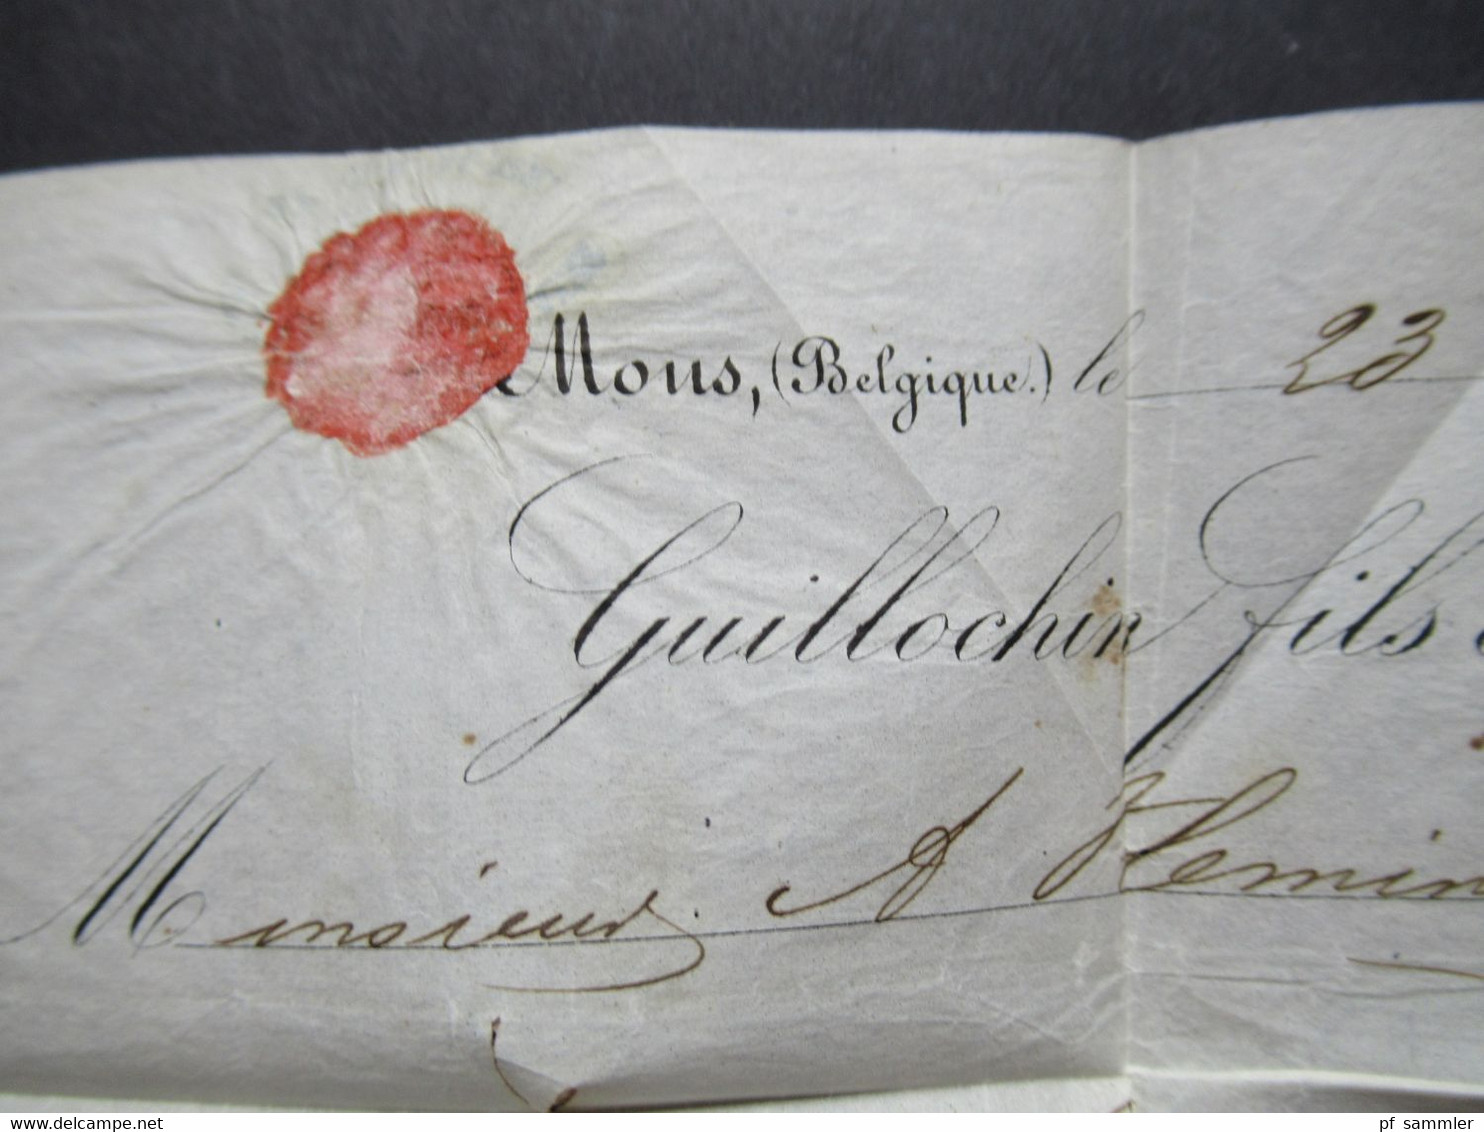 Belgien 1852 Mous gedruckter Brief Guillochin fils mit 2 roten Stempeln Faltbrief mit Inhalt